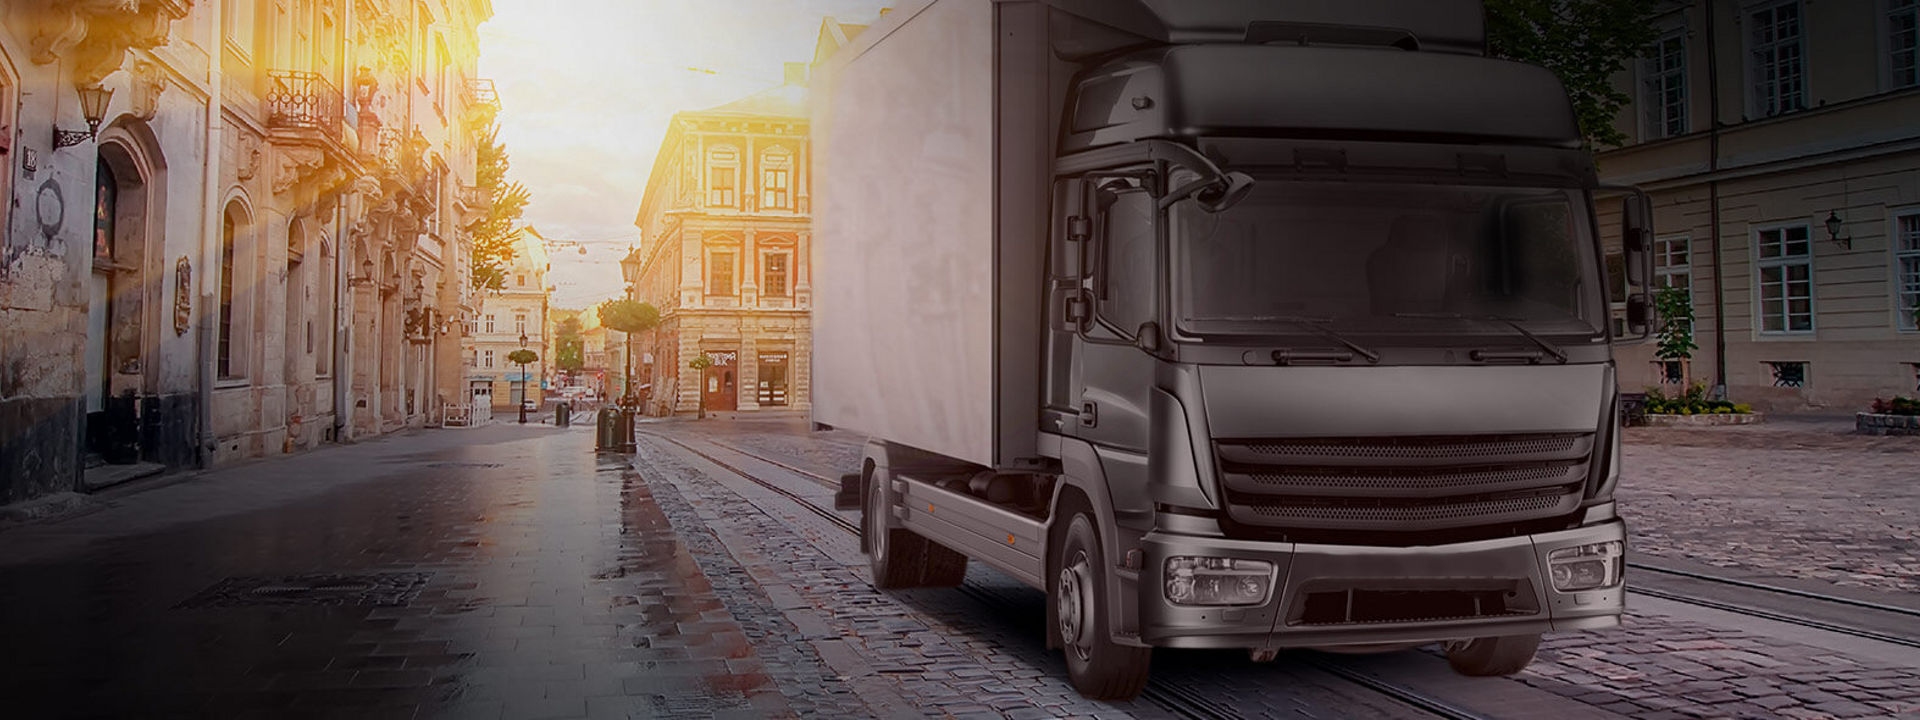 Na tej sliki je prikazan tovornjak, ki za dostavo blaga sredi mesta uporablja Bridgestonove pnevmatike za lahke in srednje tovornjake.